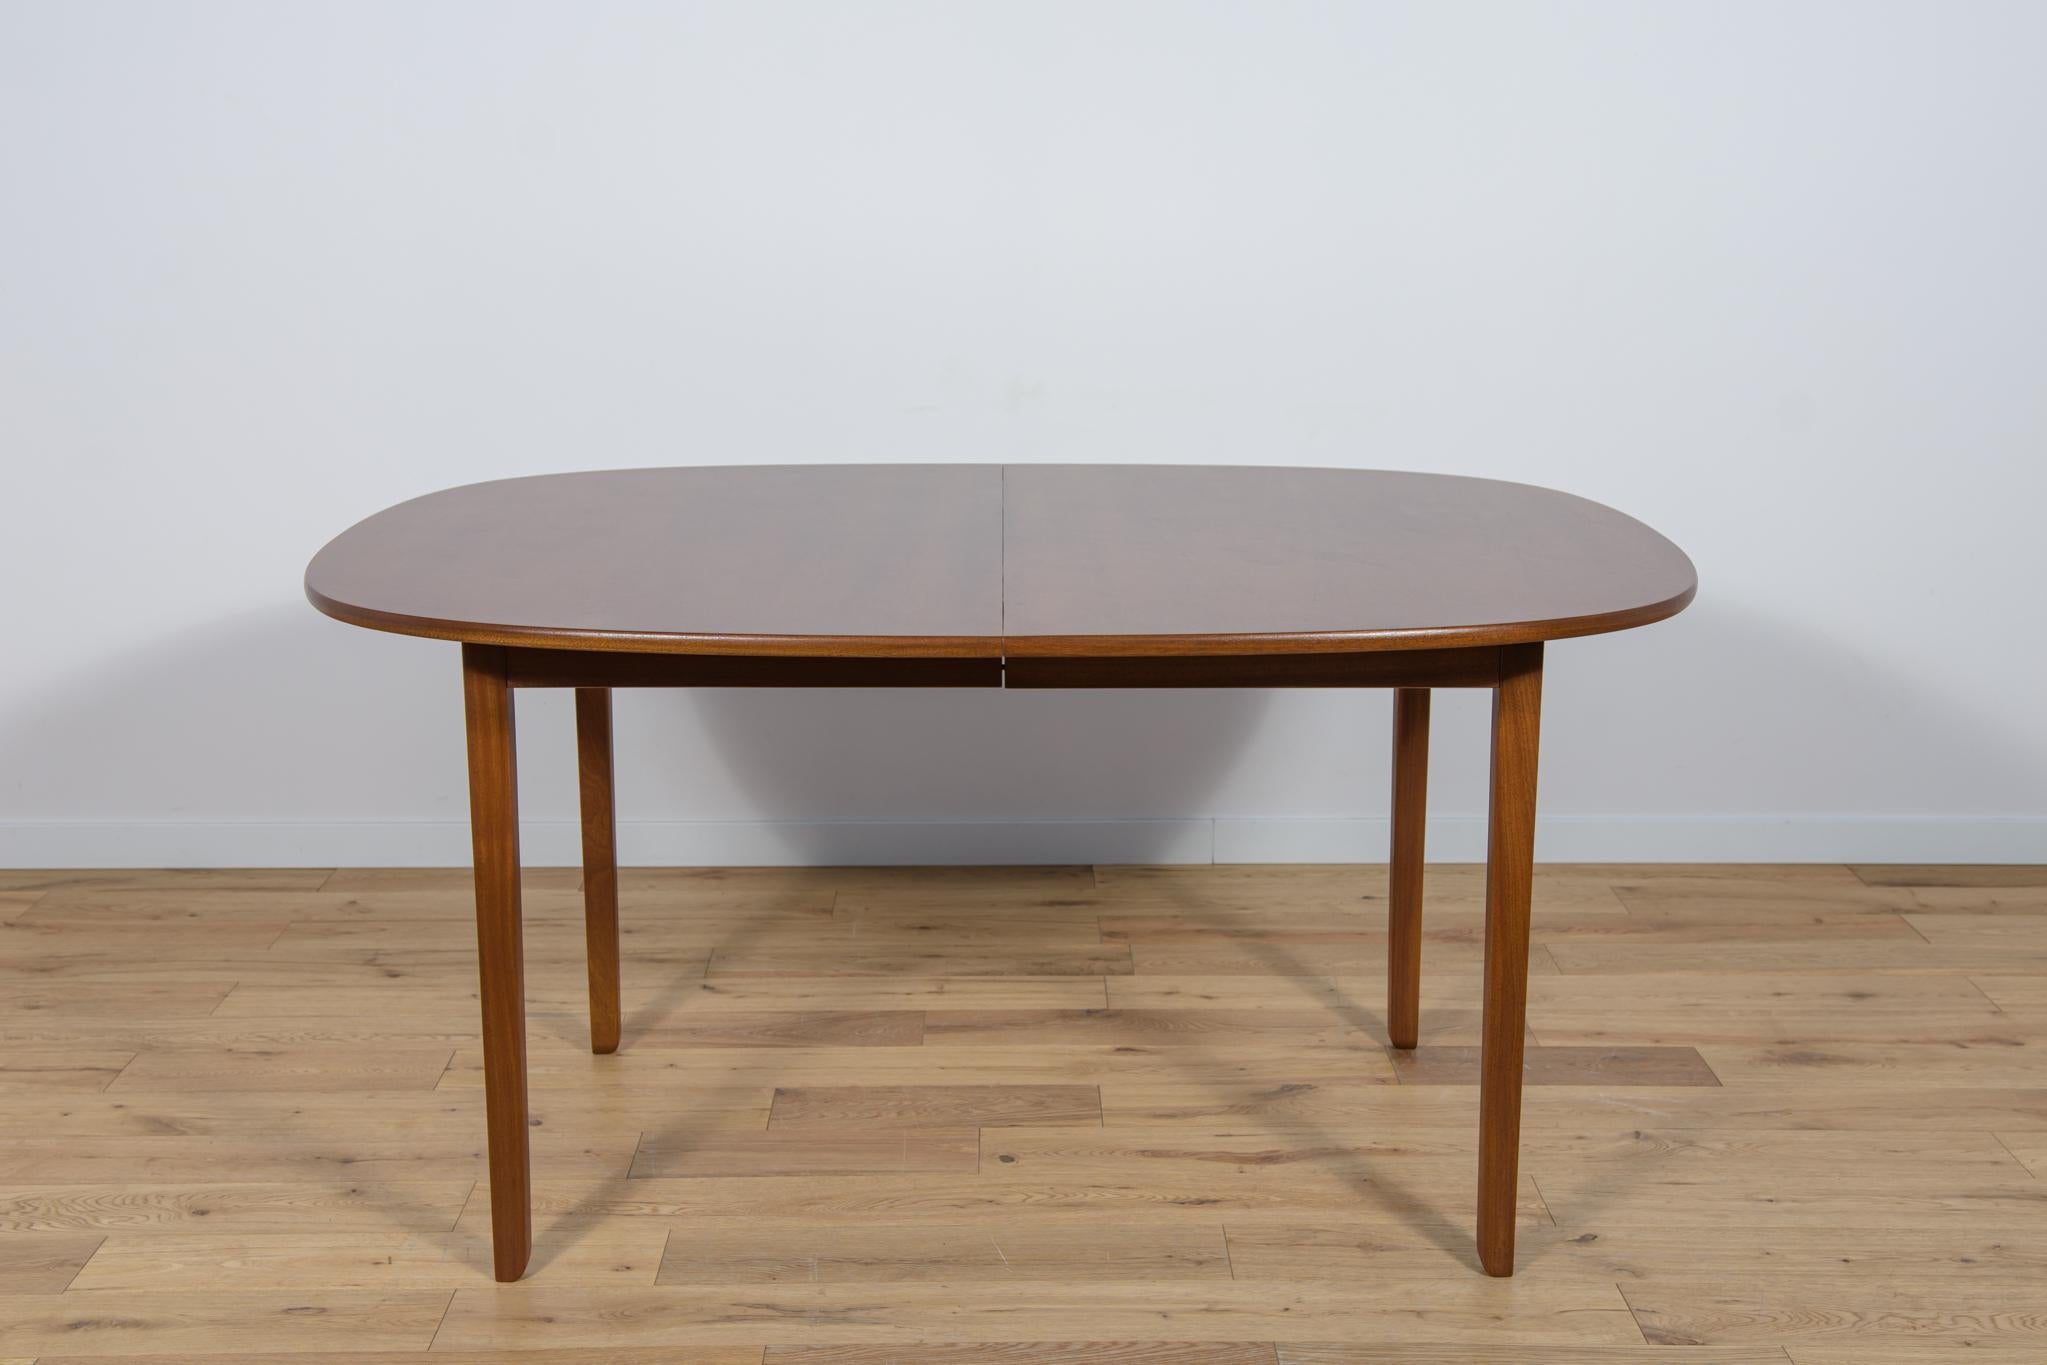 Der Tisch Rungstedlund wurde von Ole Wanscher entworfen und in den 1960er und 1970er Jahren von Poul Jeppesen in St. Heddinge in Dänemark hergestellt. Vollständig restauriert. Der Tisch ist aus Mahagoniholz gefertigt. Die Holzelemente wurden von der